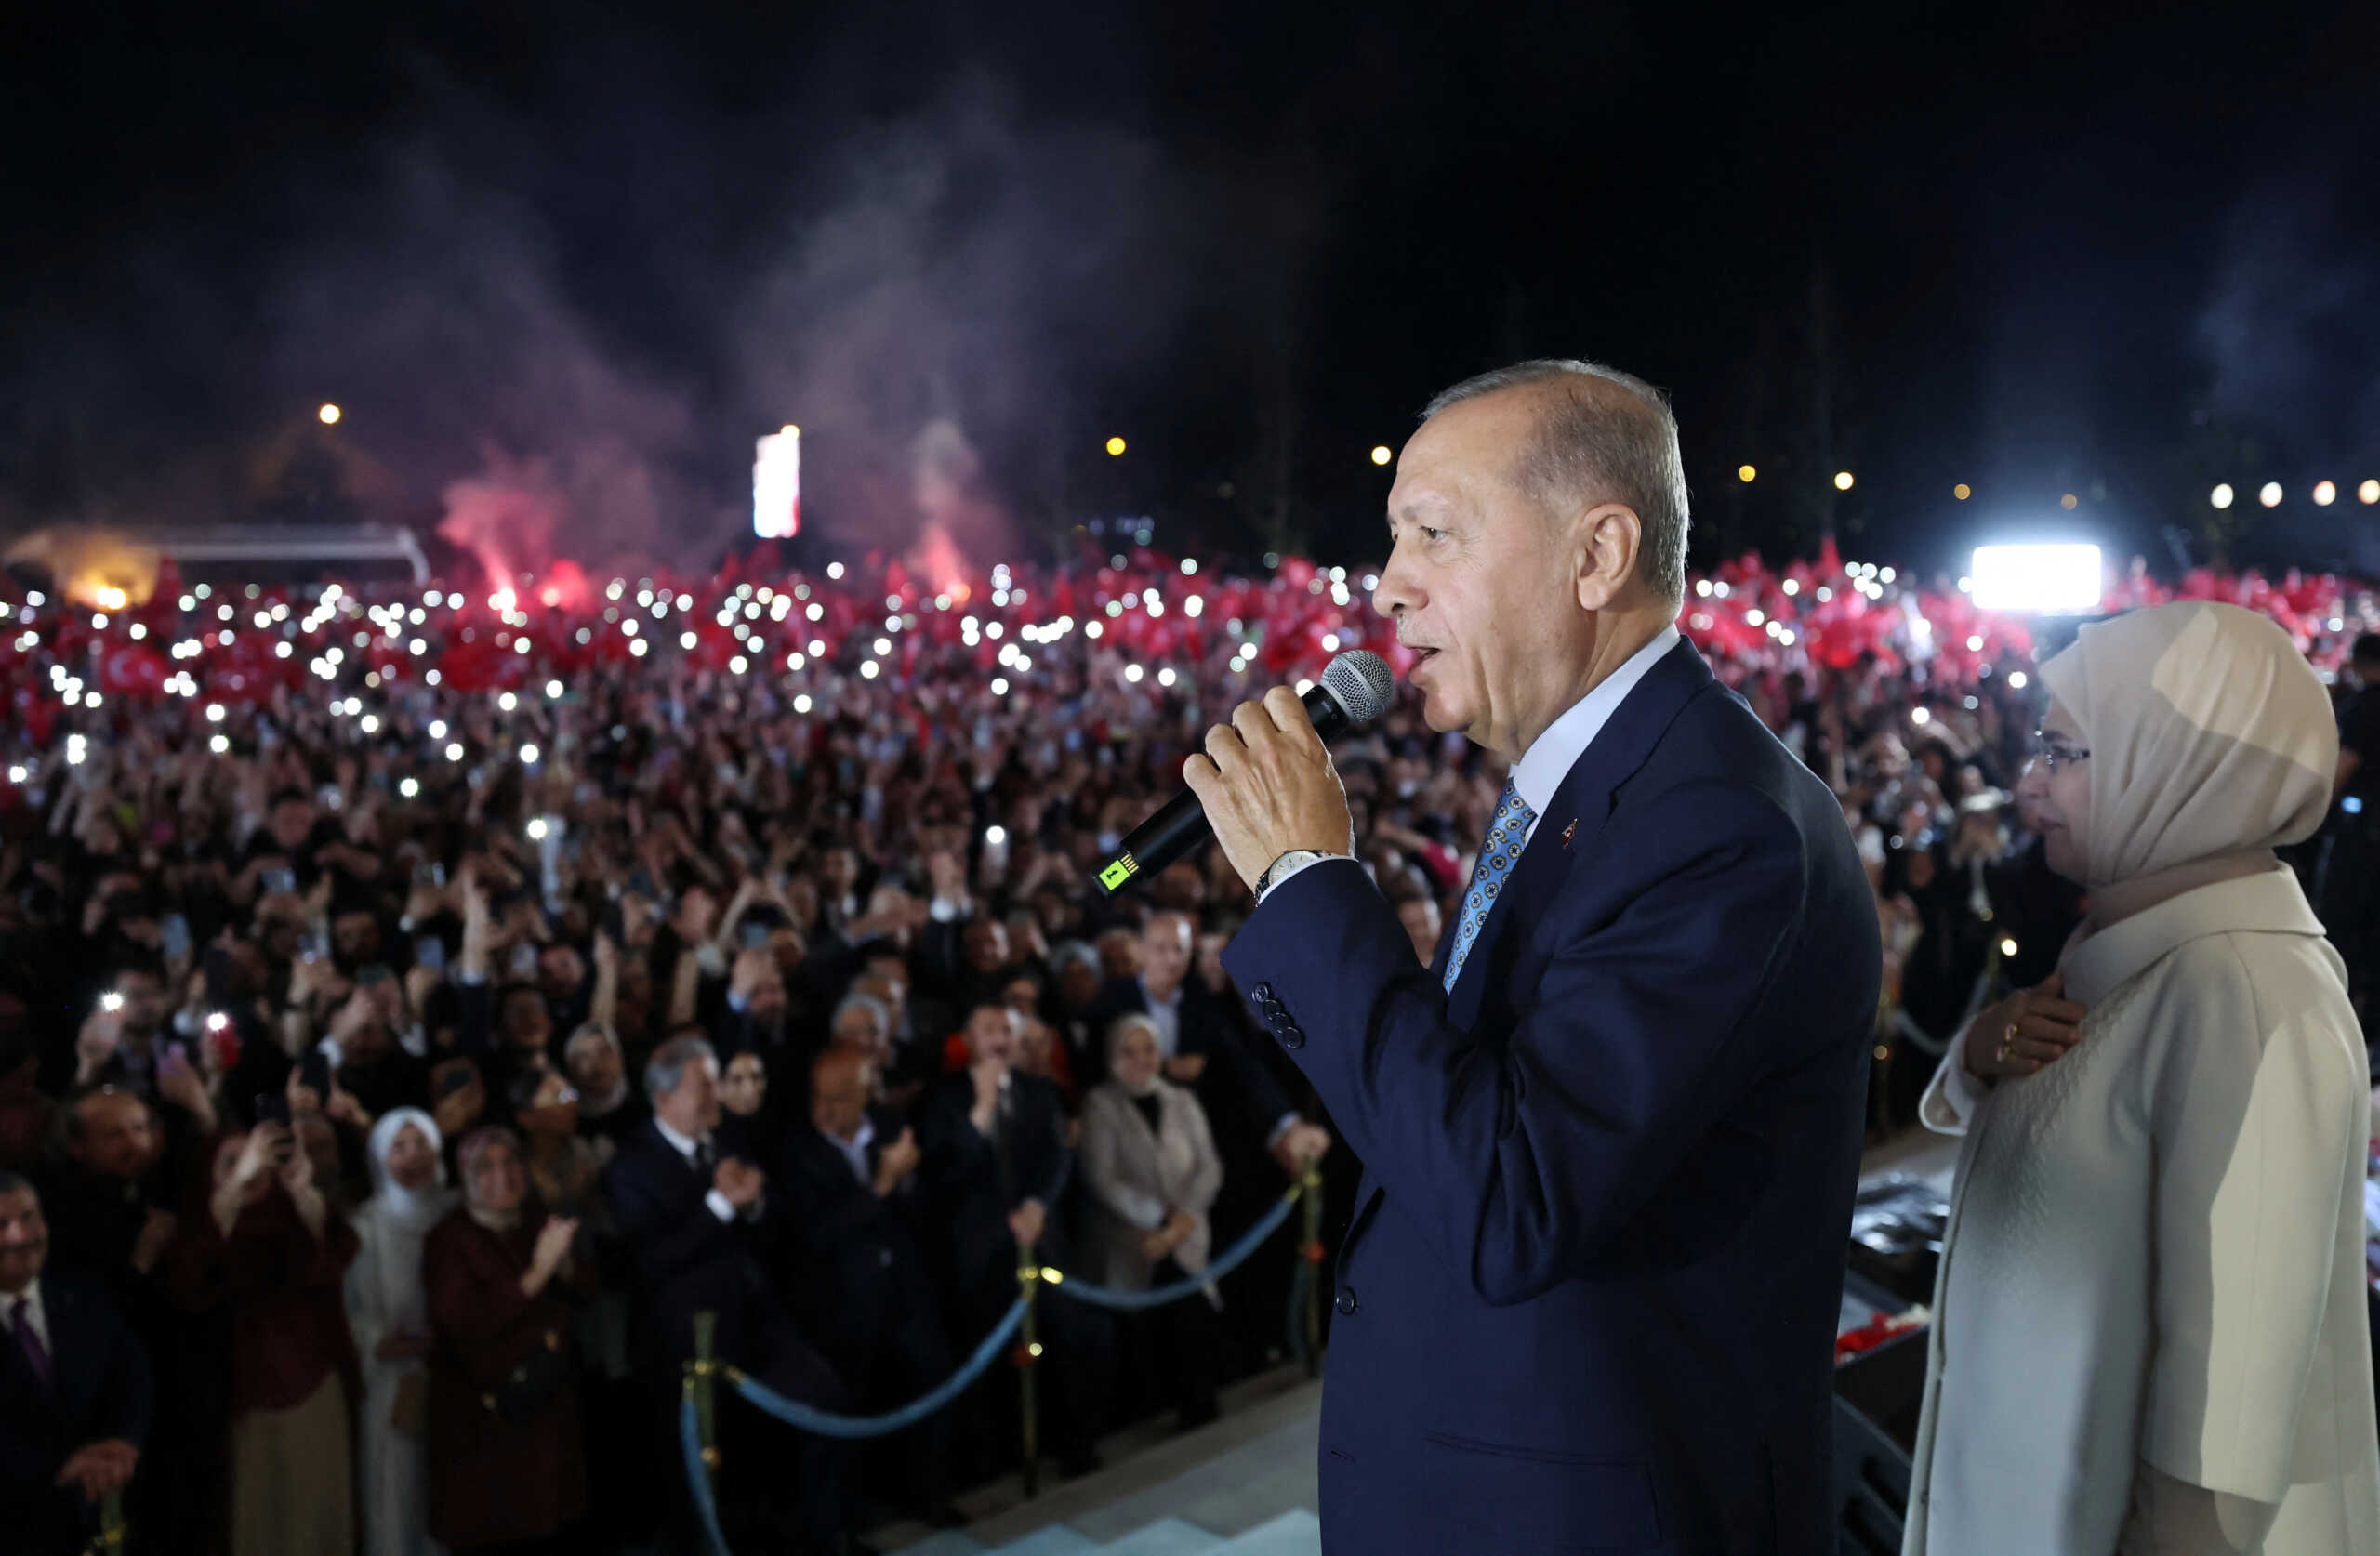 Εκλογές – Τουρκία: Στην Αγία Σοφία, ανήμερα της επετείου της Άλωσης, η φιέστα Ερντογάν για τη νίκη του